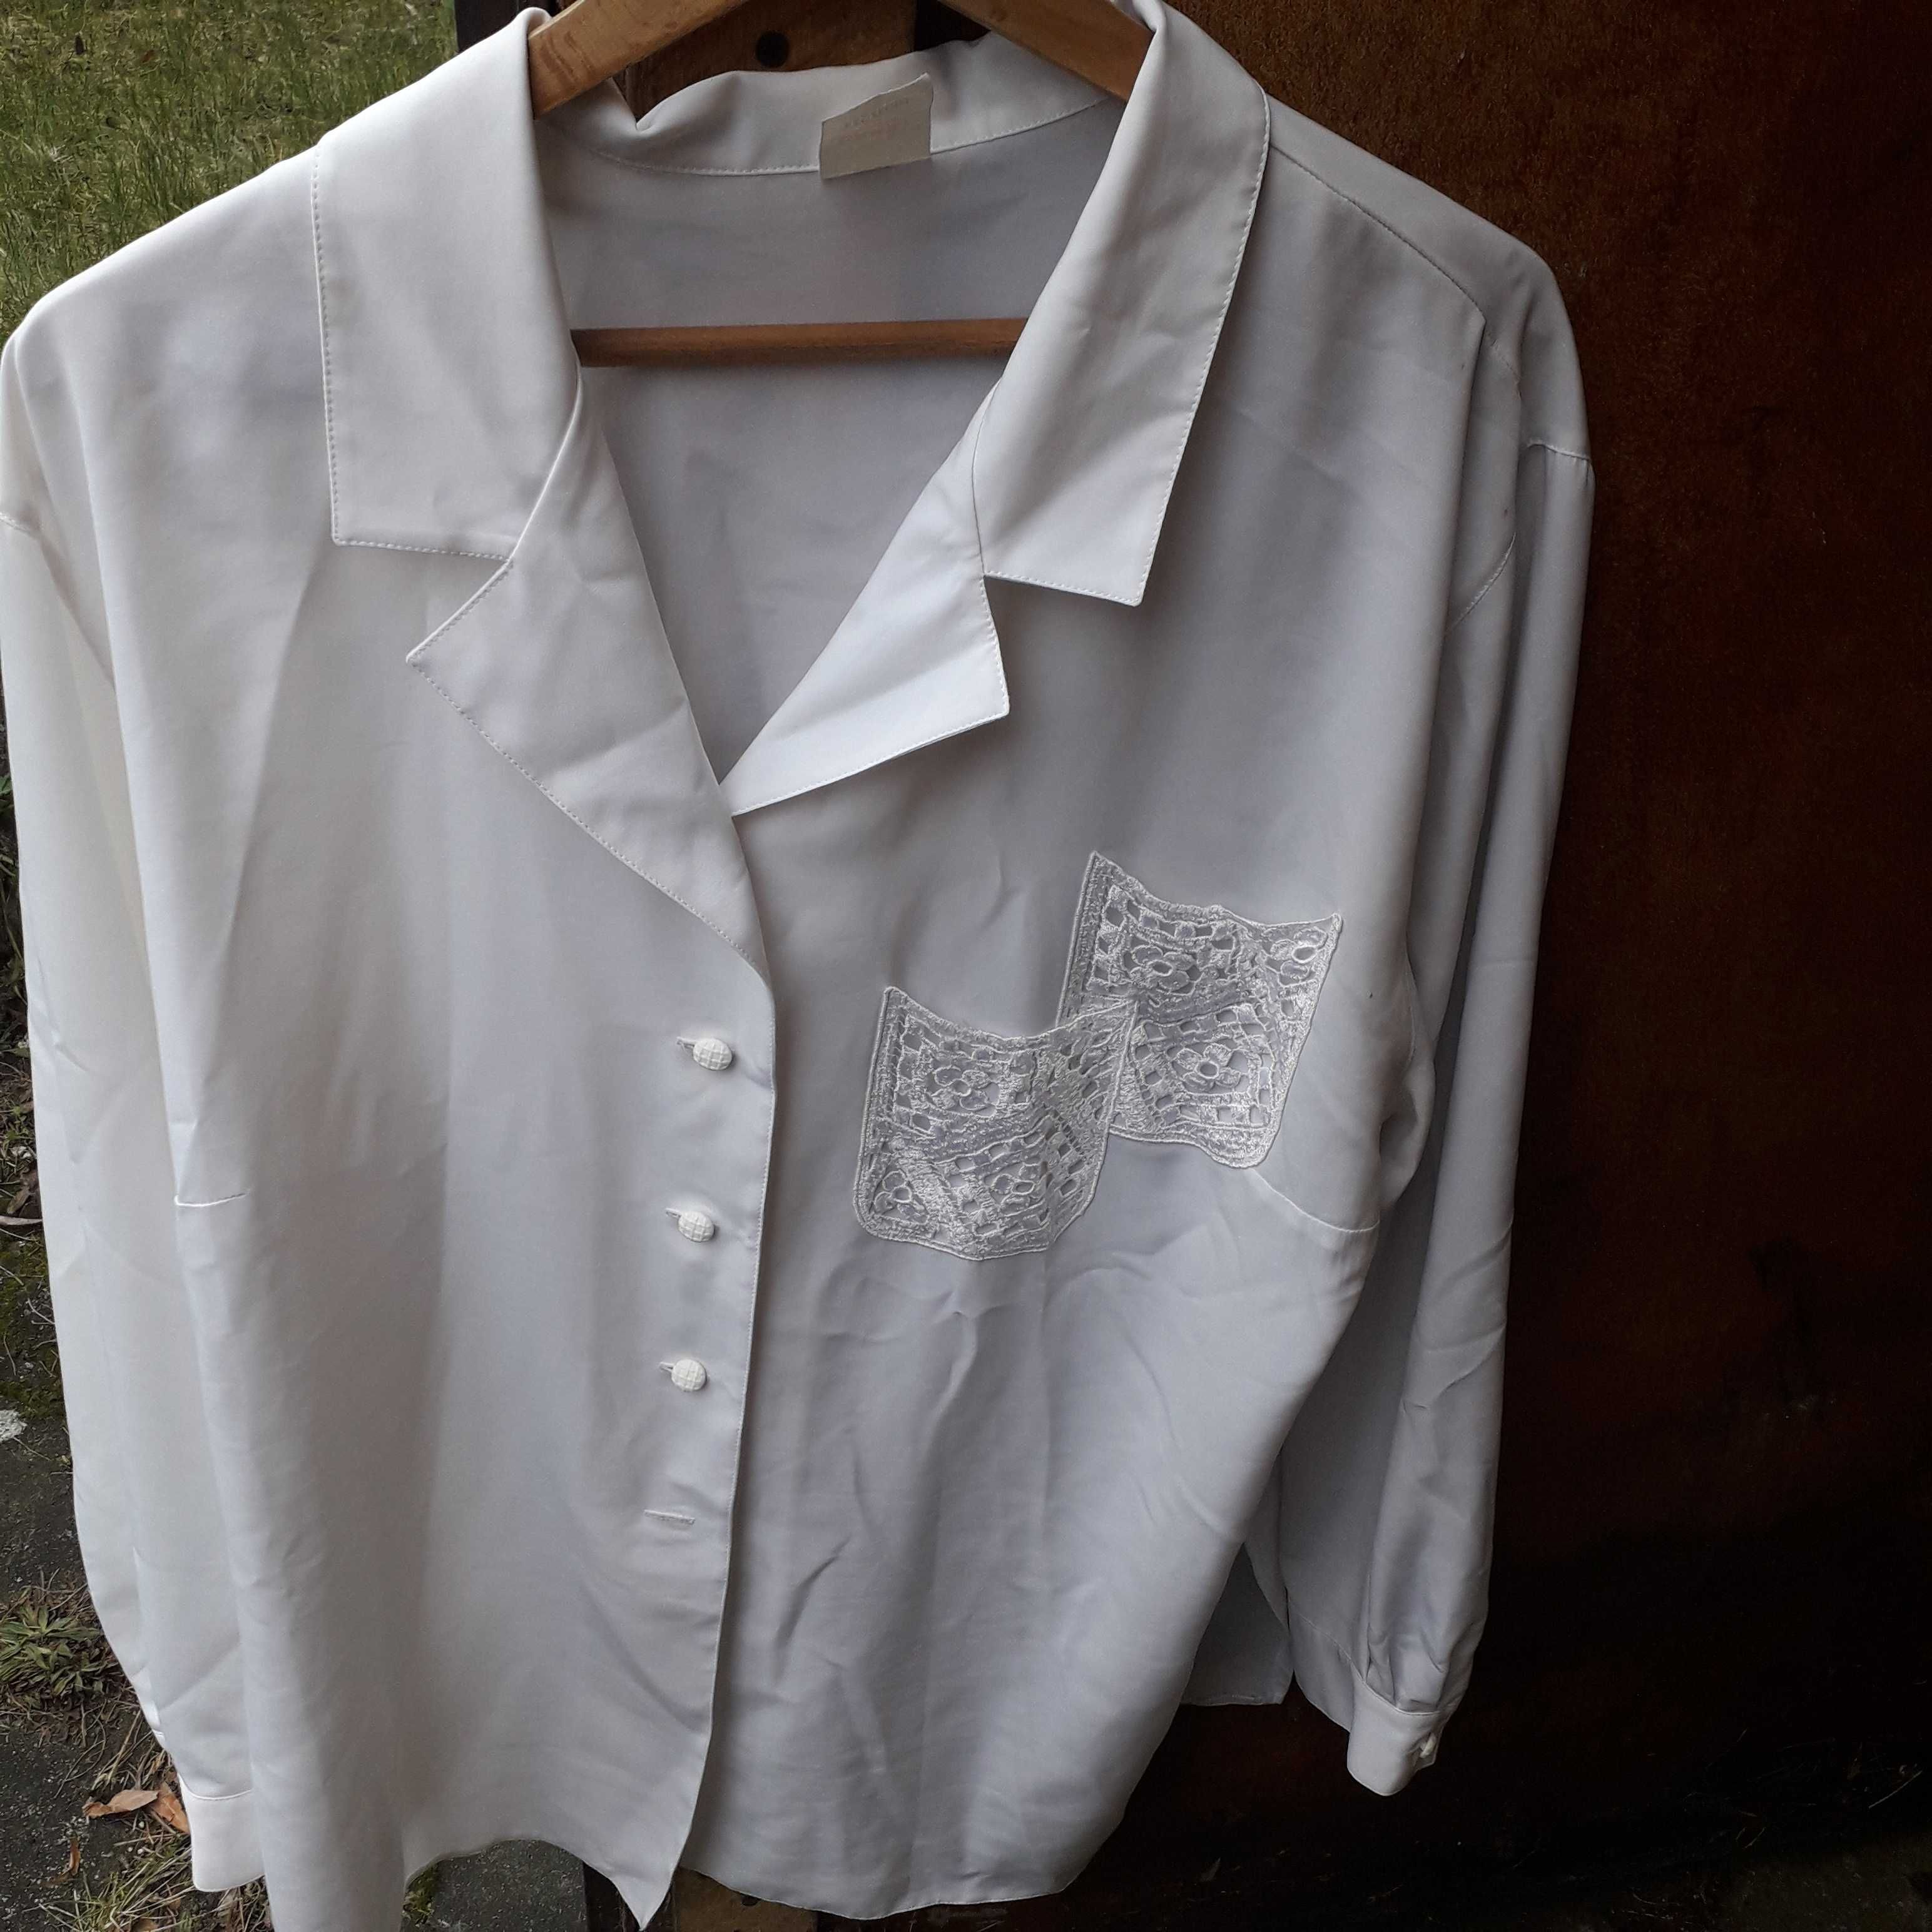 Biała koszula damska firma Dana rozmiar 42